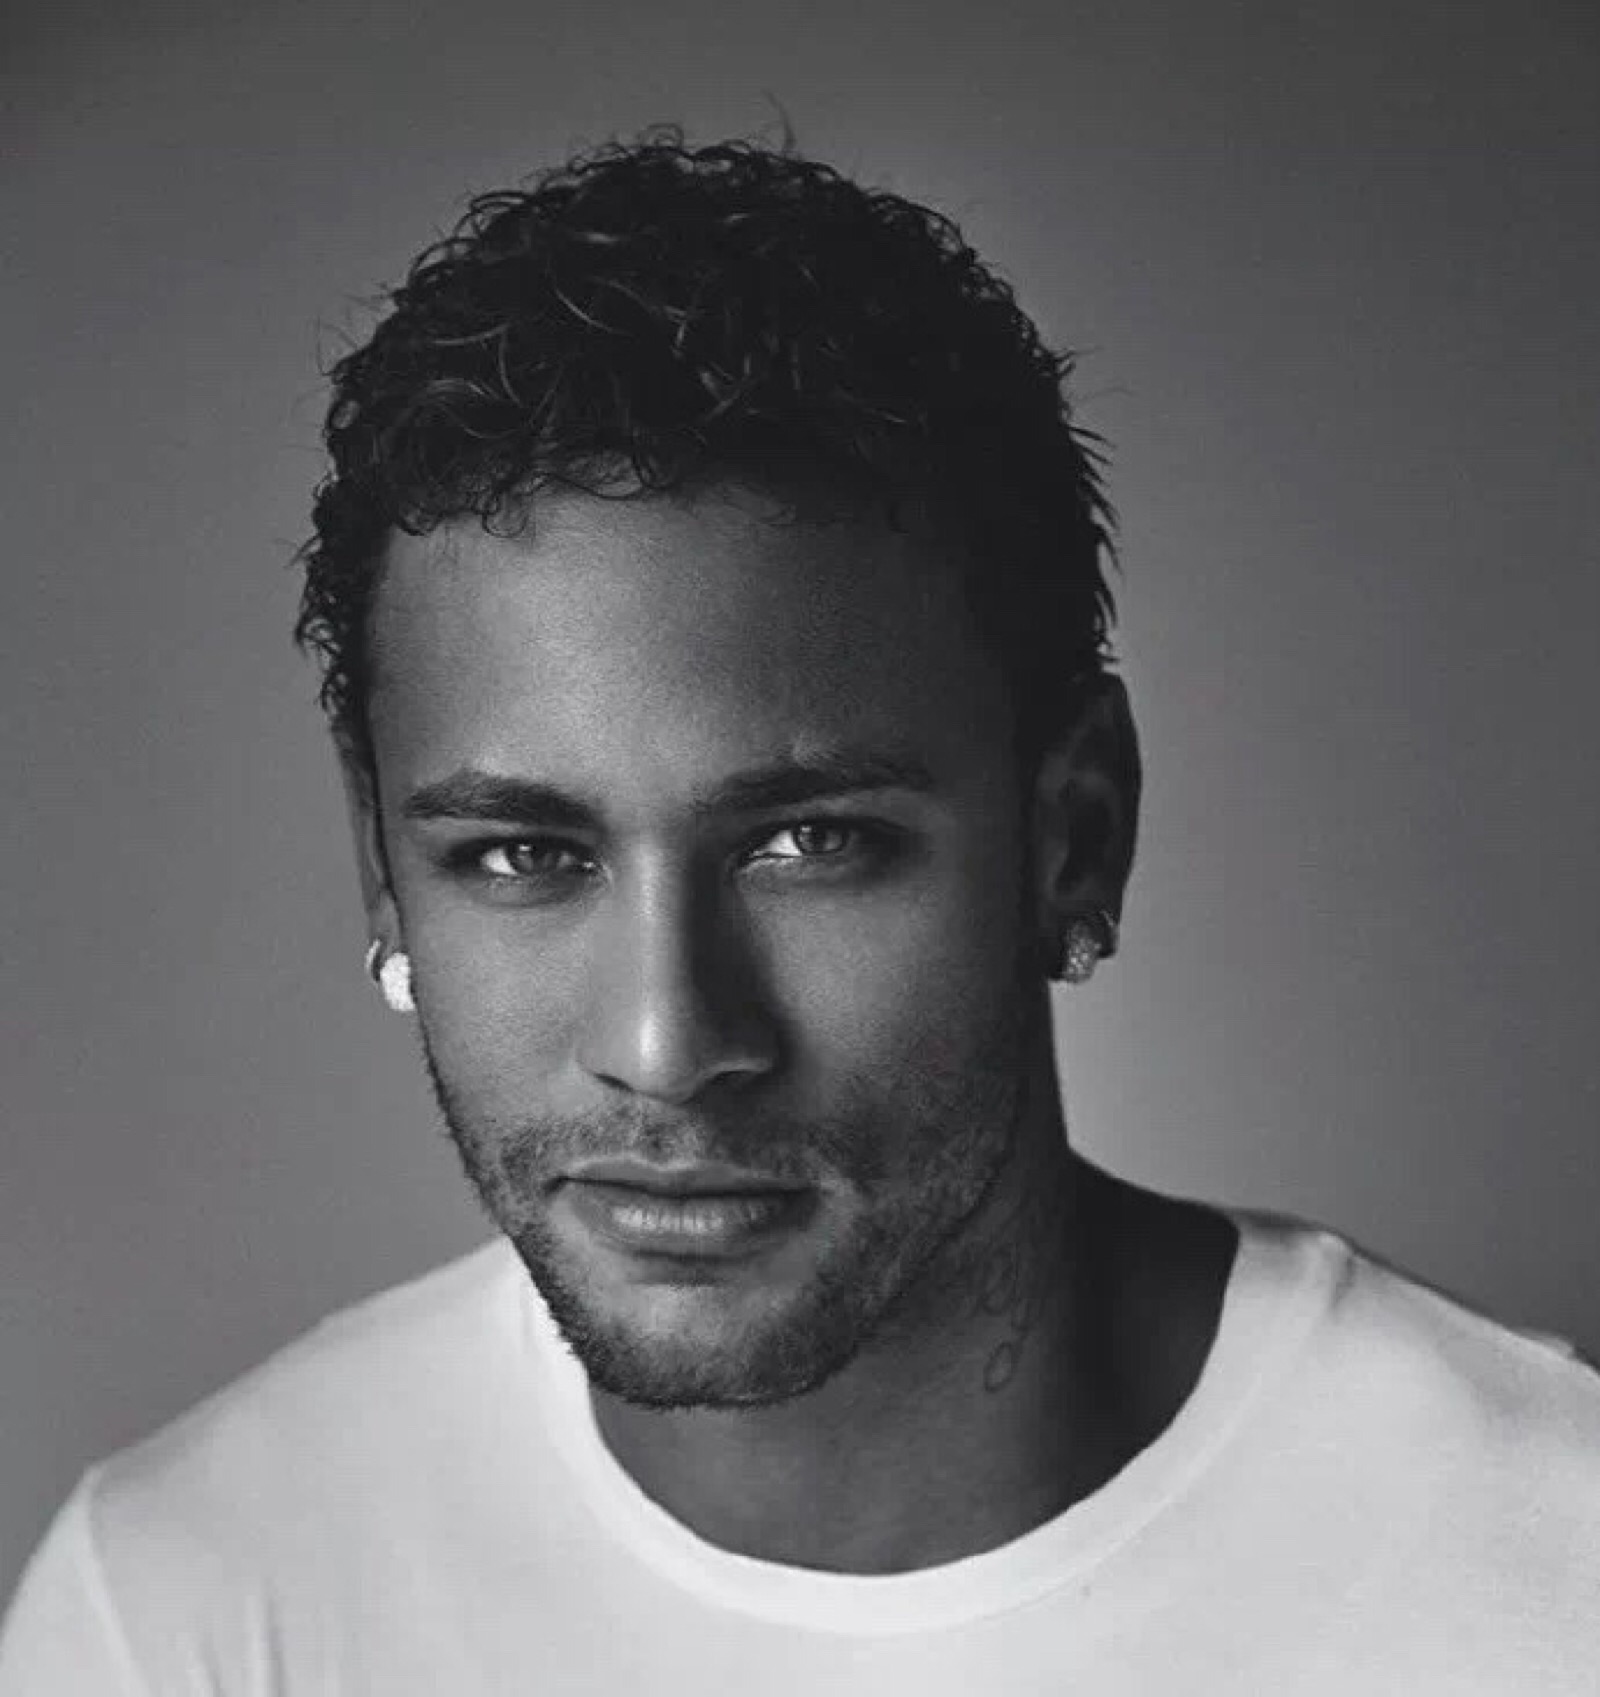 neymar jr球员图片